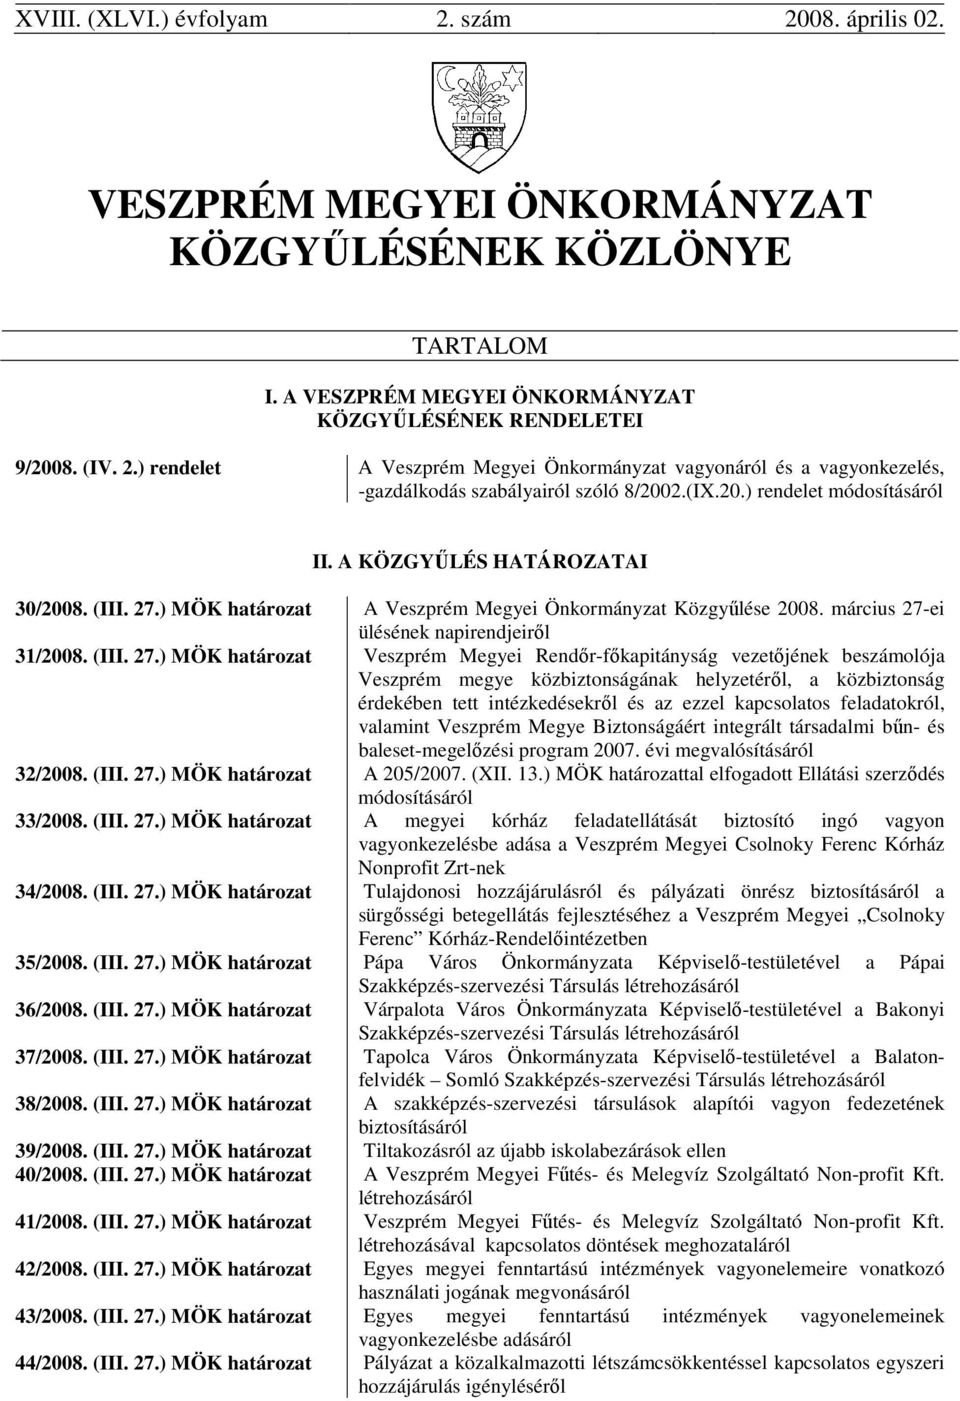 ) MÖK határozat A Veszprém Megyei Önkormányzat Közgyűlése 2008. március 27-